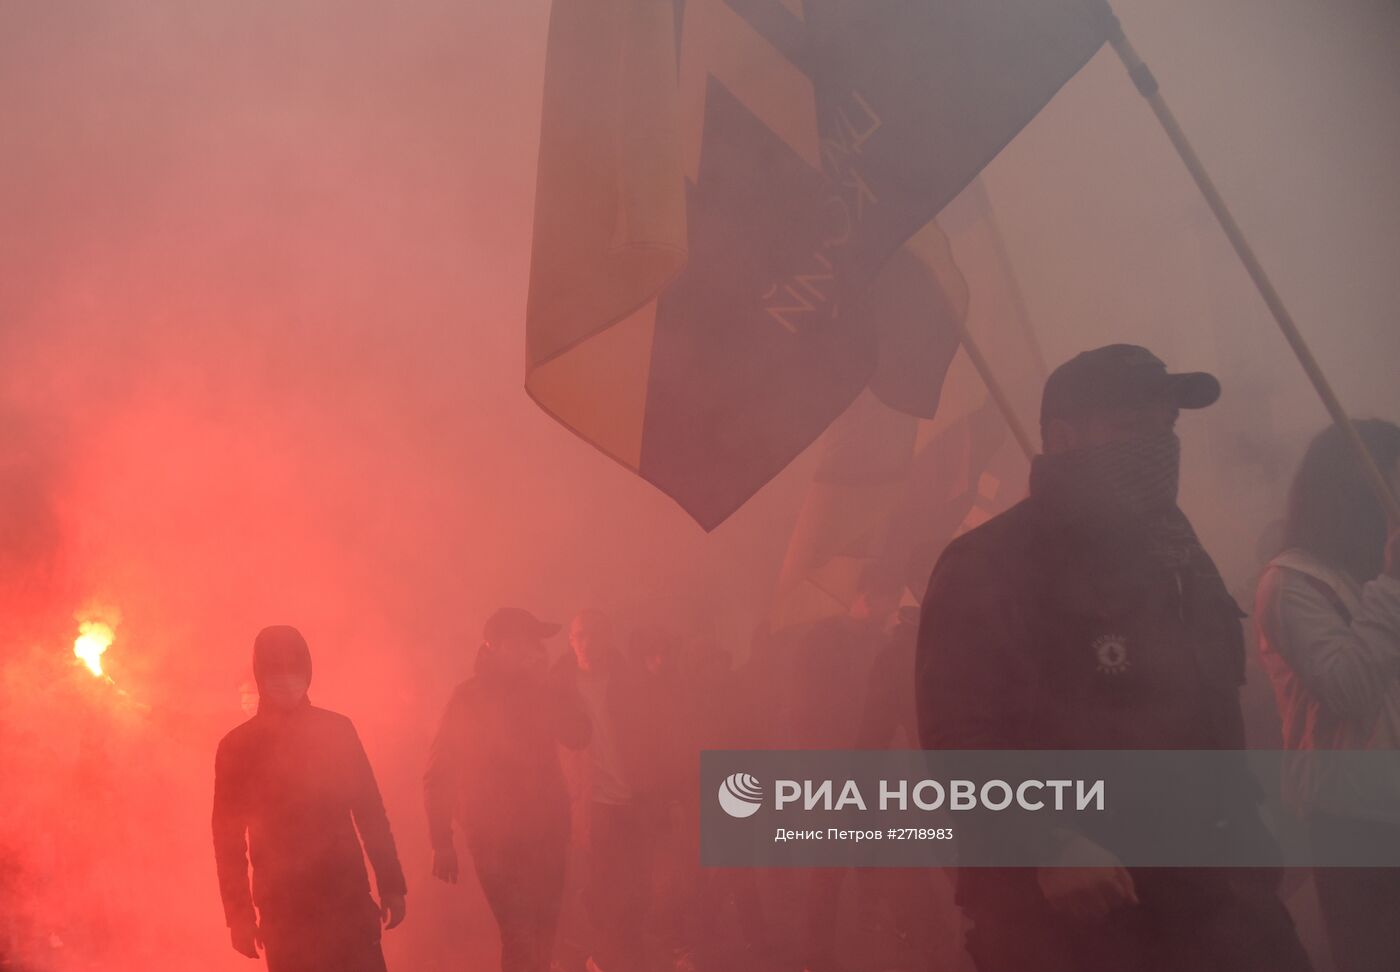 Акции в украинских городах в День защитника Украины